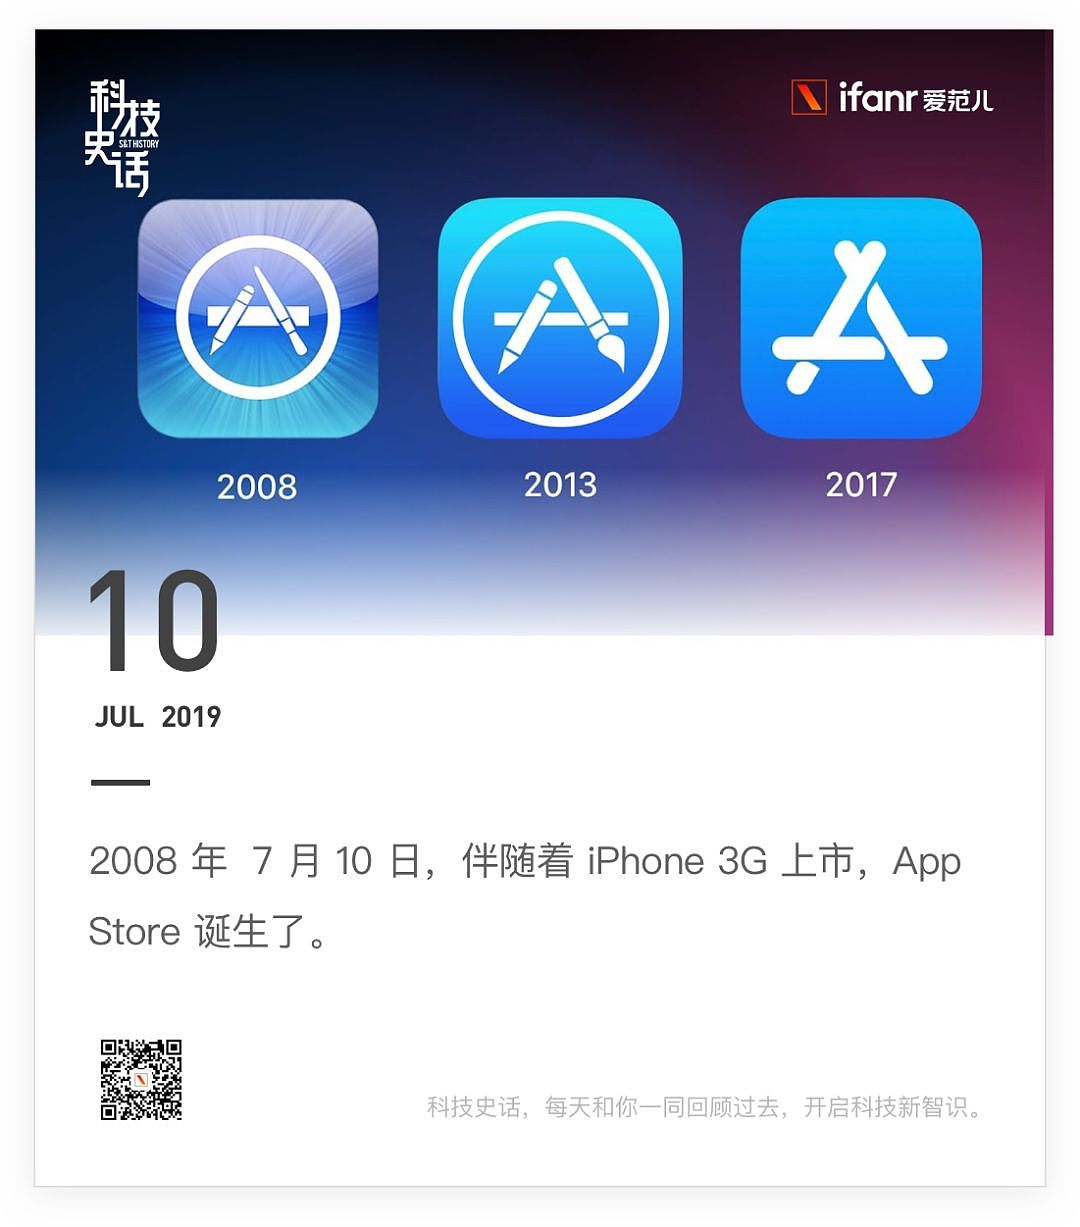 苹果上线教育优惠，更新电脑系列 / 刘强东案将于 9 月开庭 / 滴滴回应北京网约车涨价 - 22